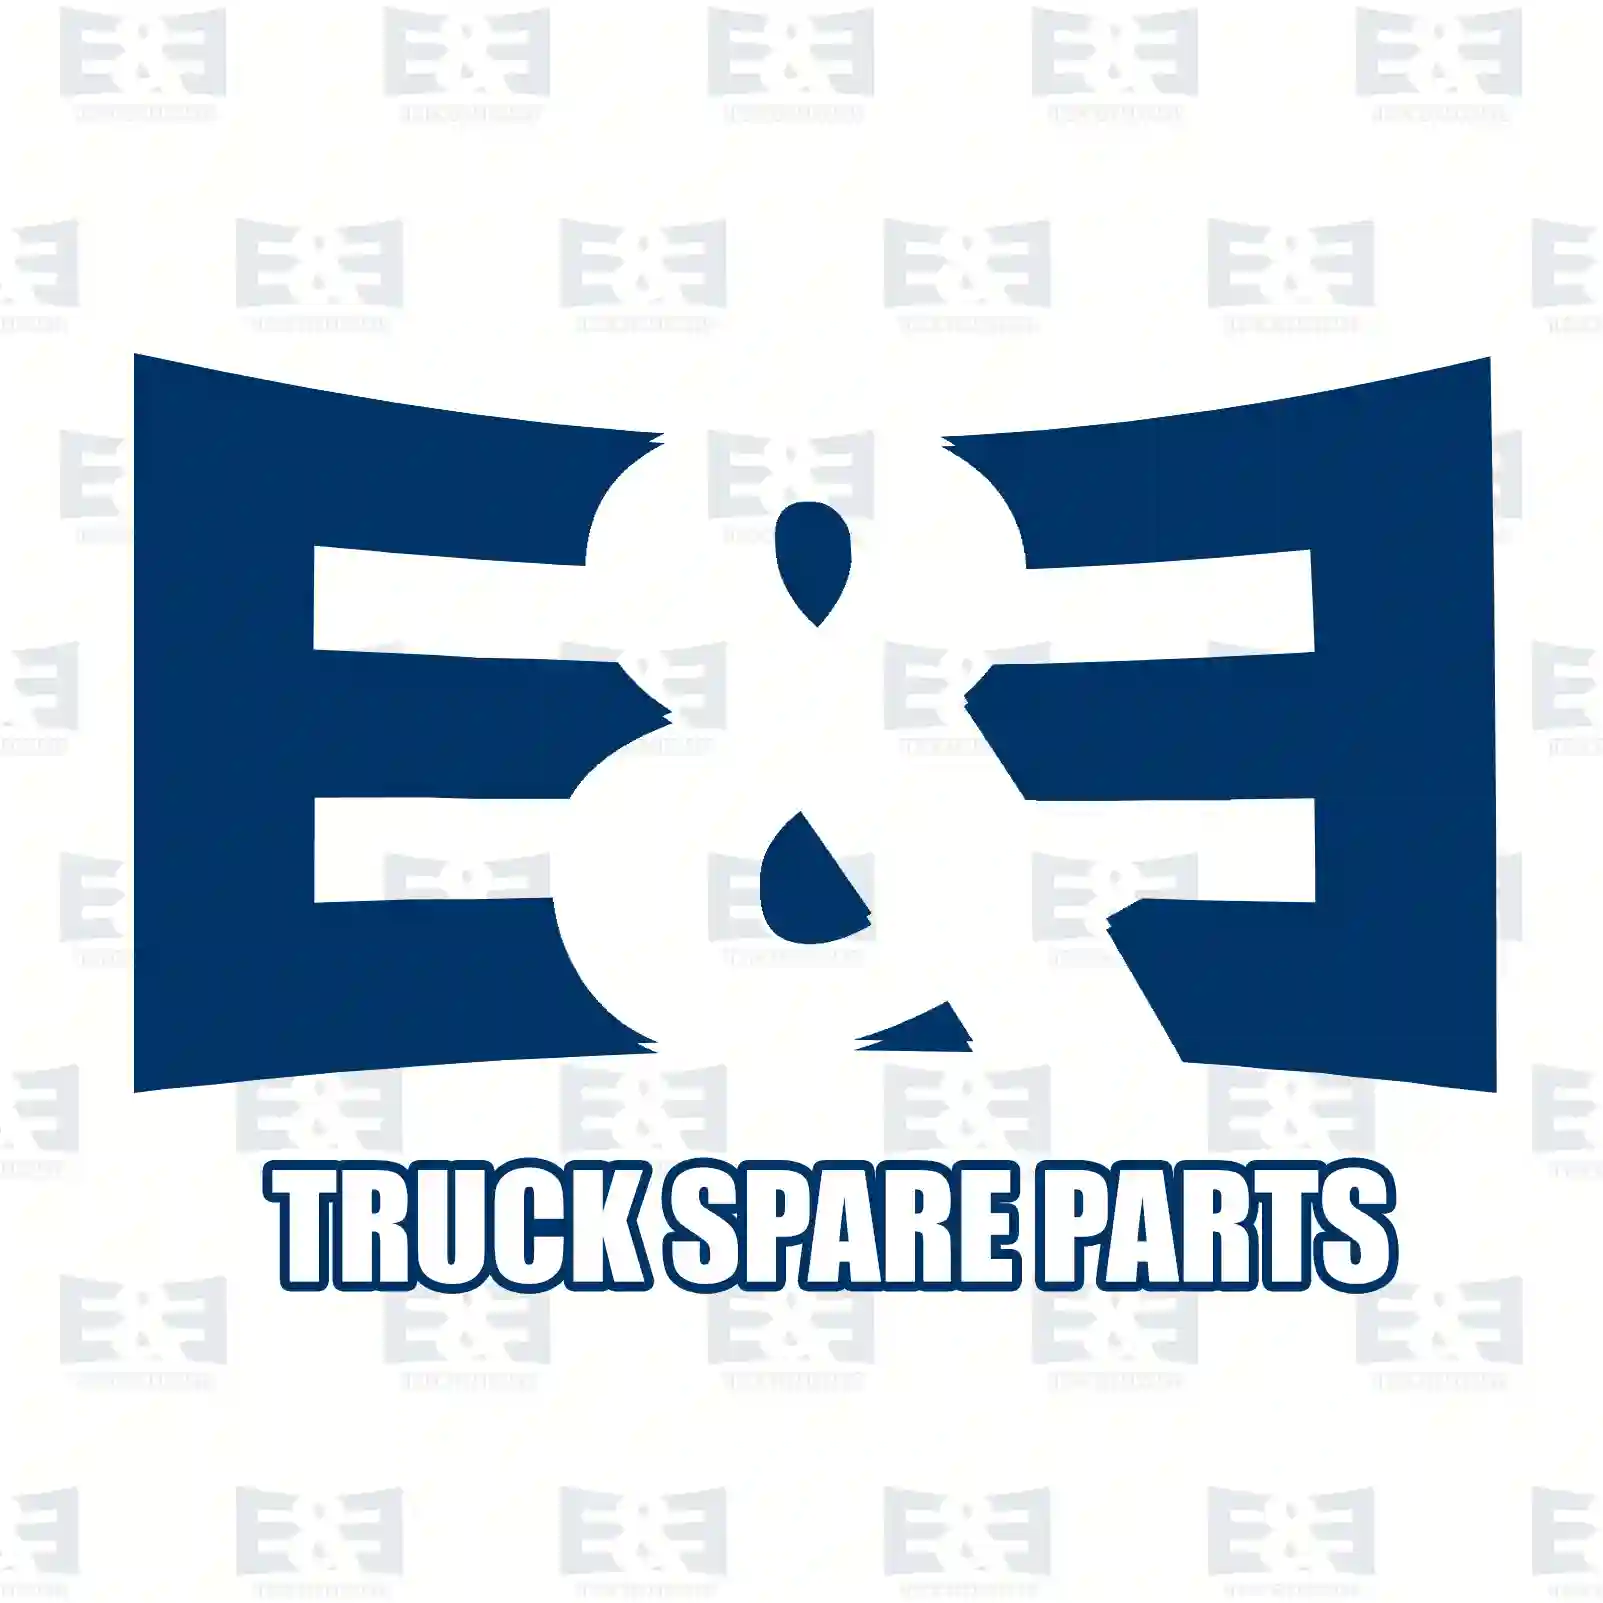 Boot, 2E2277610, 93906061, 93911172, 93906061, 93911171, 93911172 ||  2E2277610 E&E Truck Spare Parts | Truck Spare Parts, Auotomotive Spare Parts Boot, 2E2277610, 93906061, 93911172, 93906061, 93911171, 93911172 ||  2E2277610 E&E Truck Spare Parts | Truck Spare Parts, Auotomotive Spare Parts